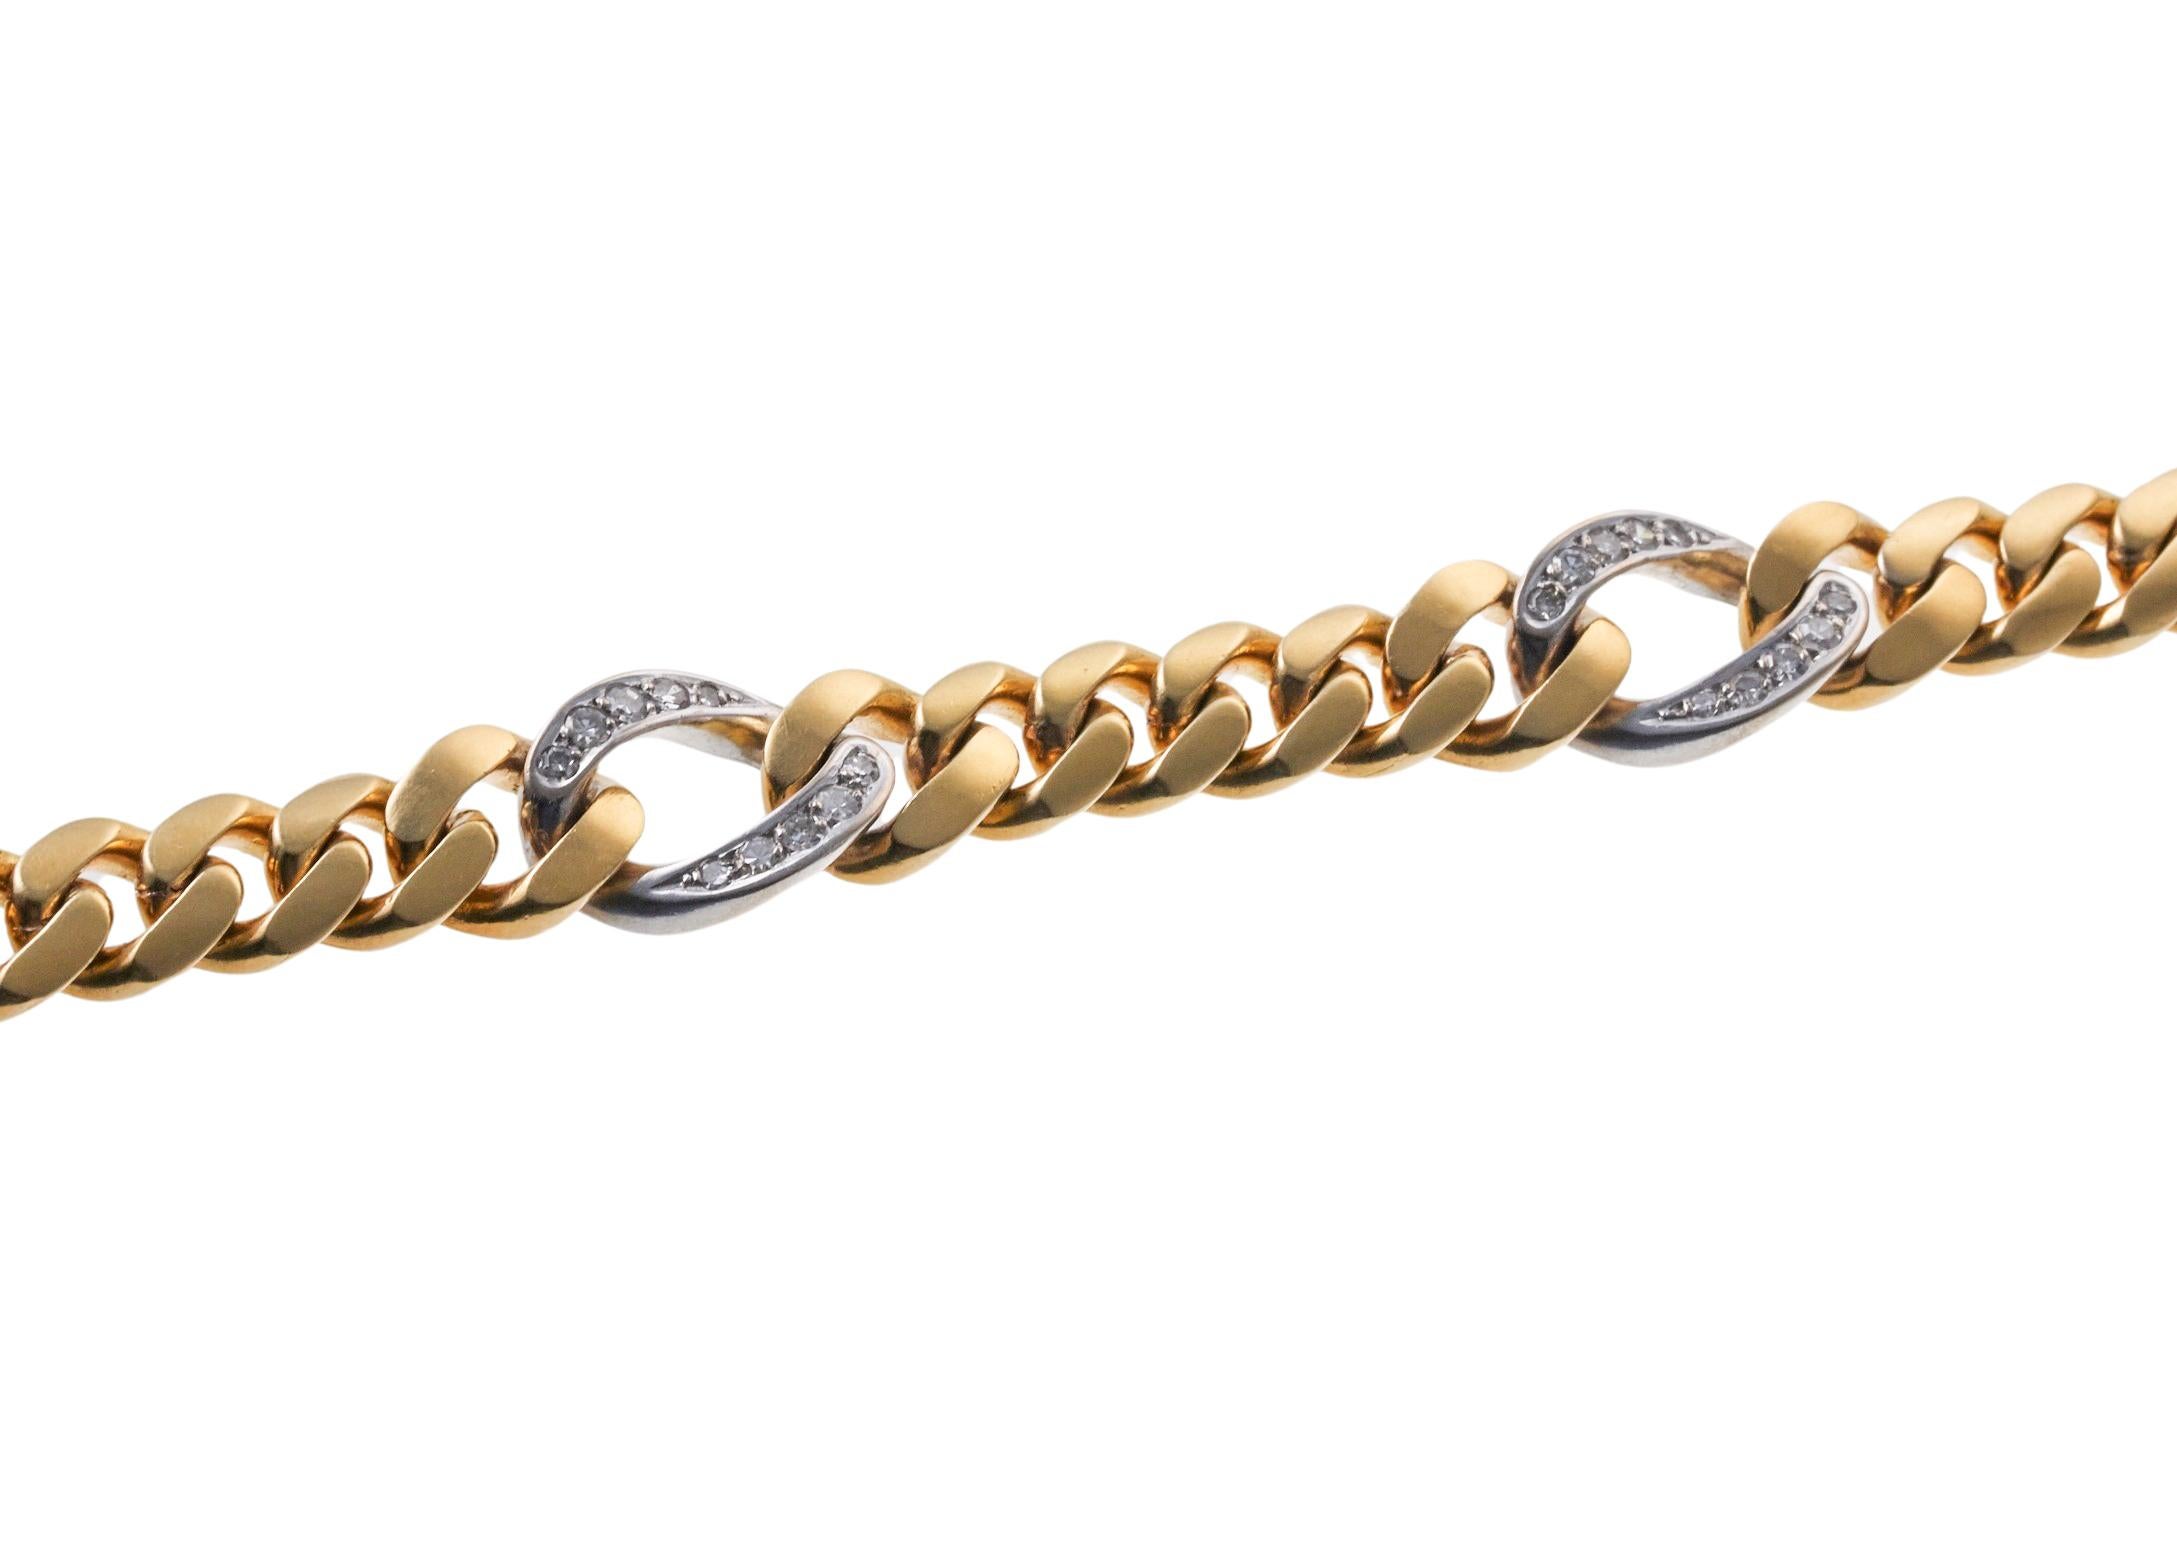 Continental 18k Gold Kandare Glied Armband, zwei Ton Gold, mit vier Diamanten Glieder - insgesamt ca. 0,40ctw, einzelne Steine geschnitten. Das Armband ist 7 1/8